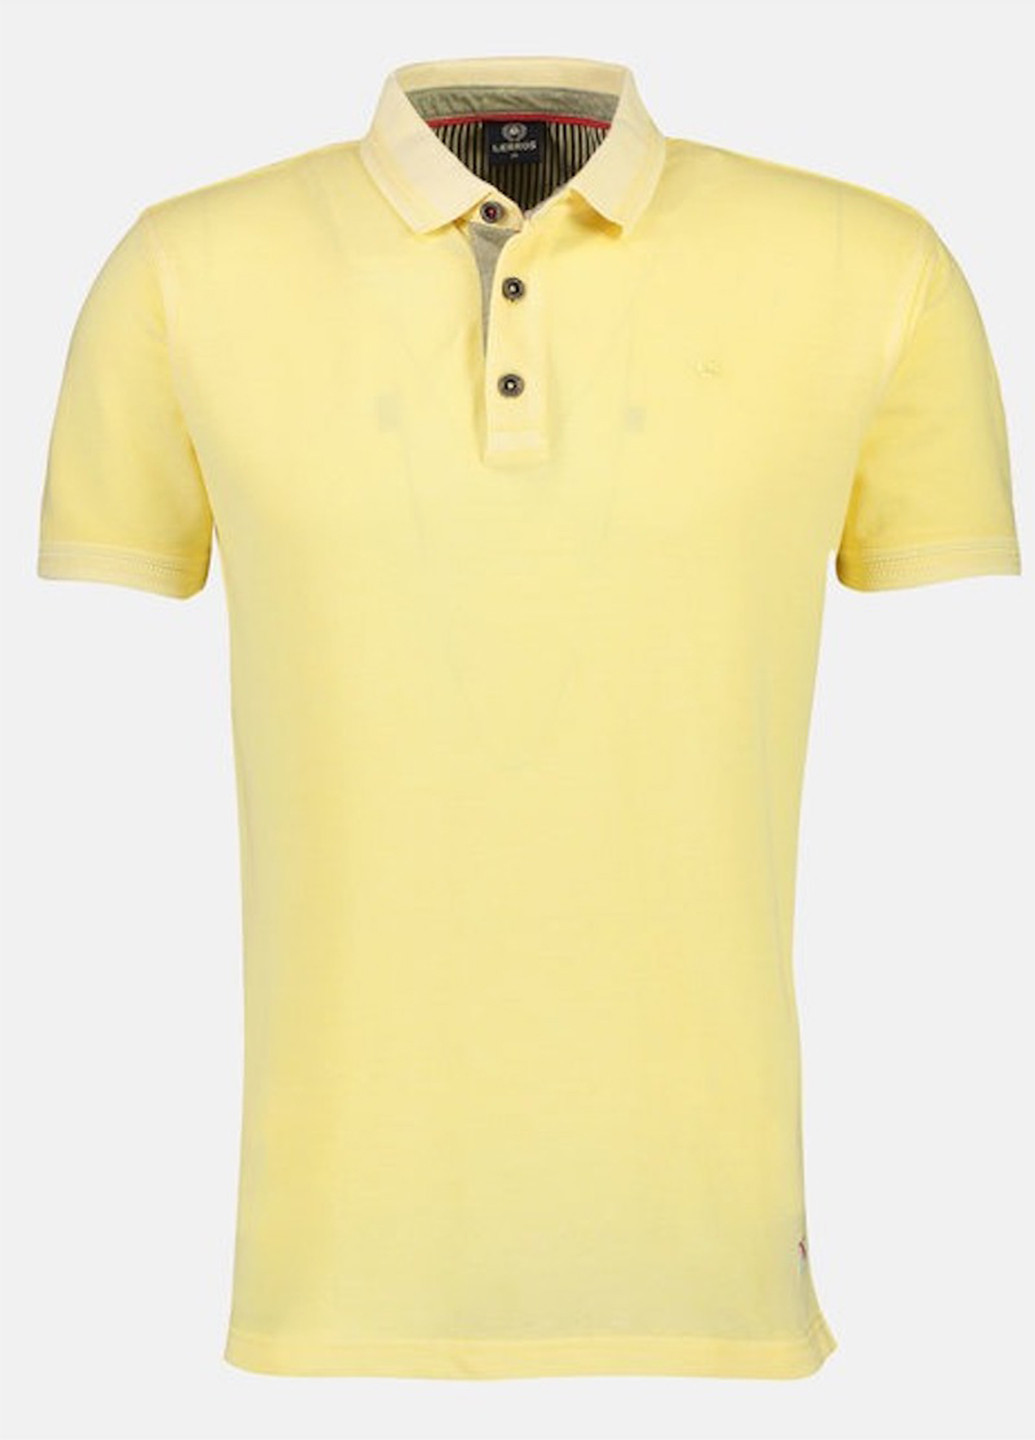 Желтая футболка-поло для мужчин Lerros однотонная